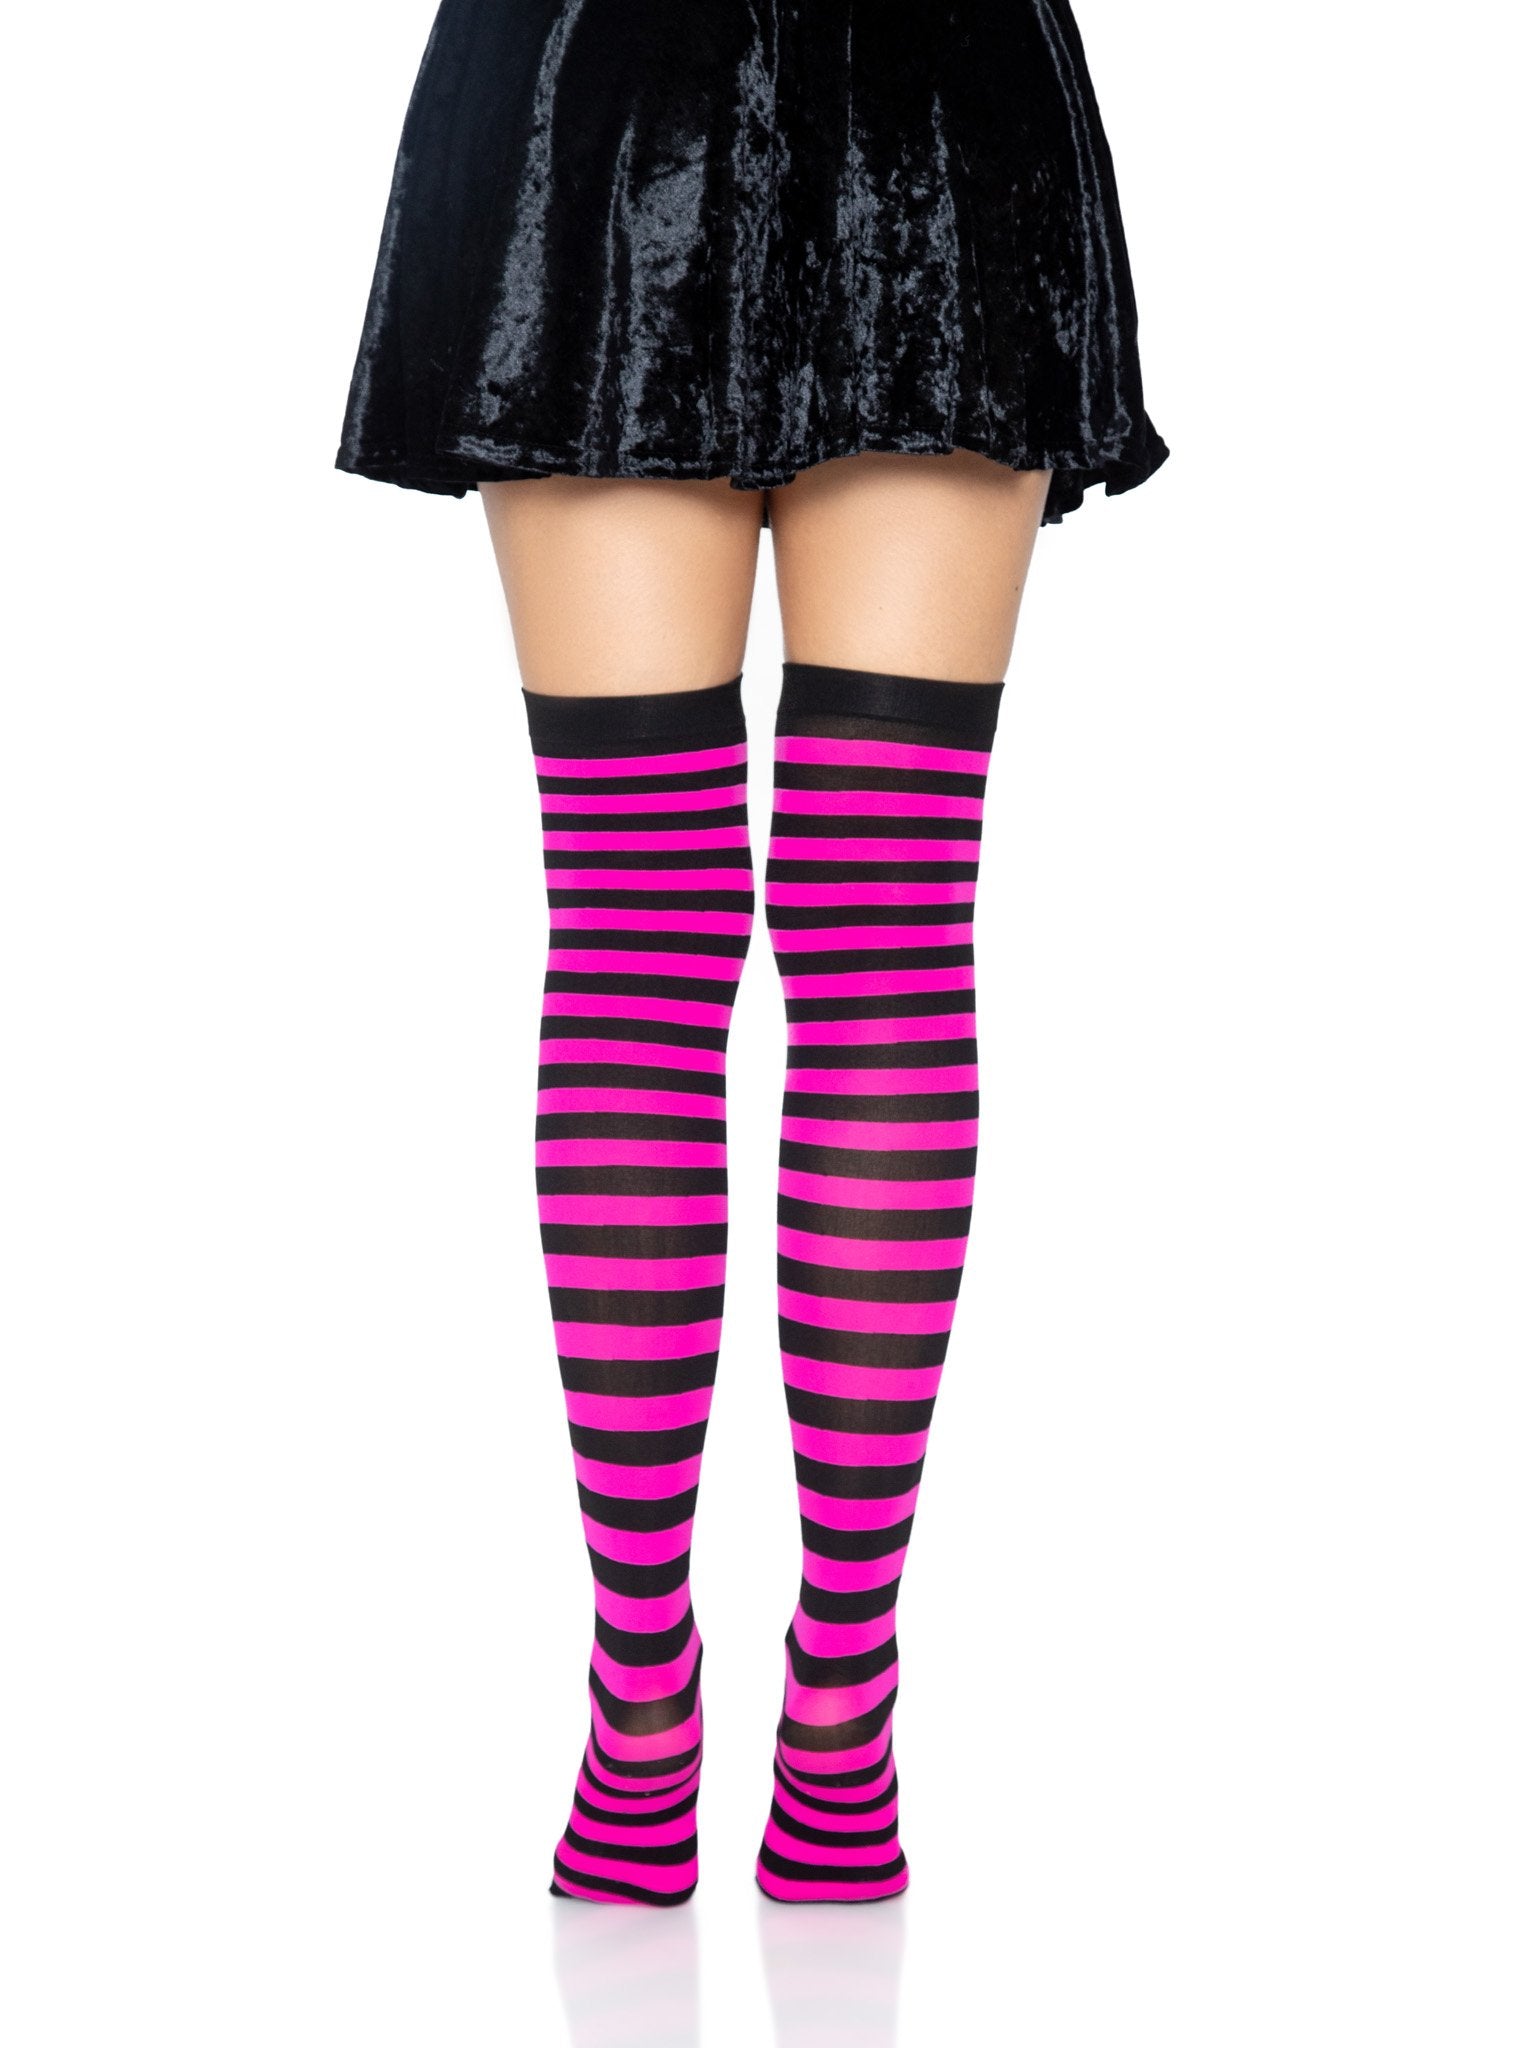 Striped Stockings, Women's Cute Socks & Hosiery | Leg Avenue